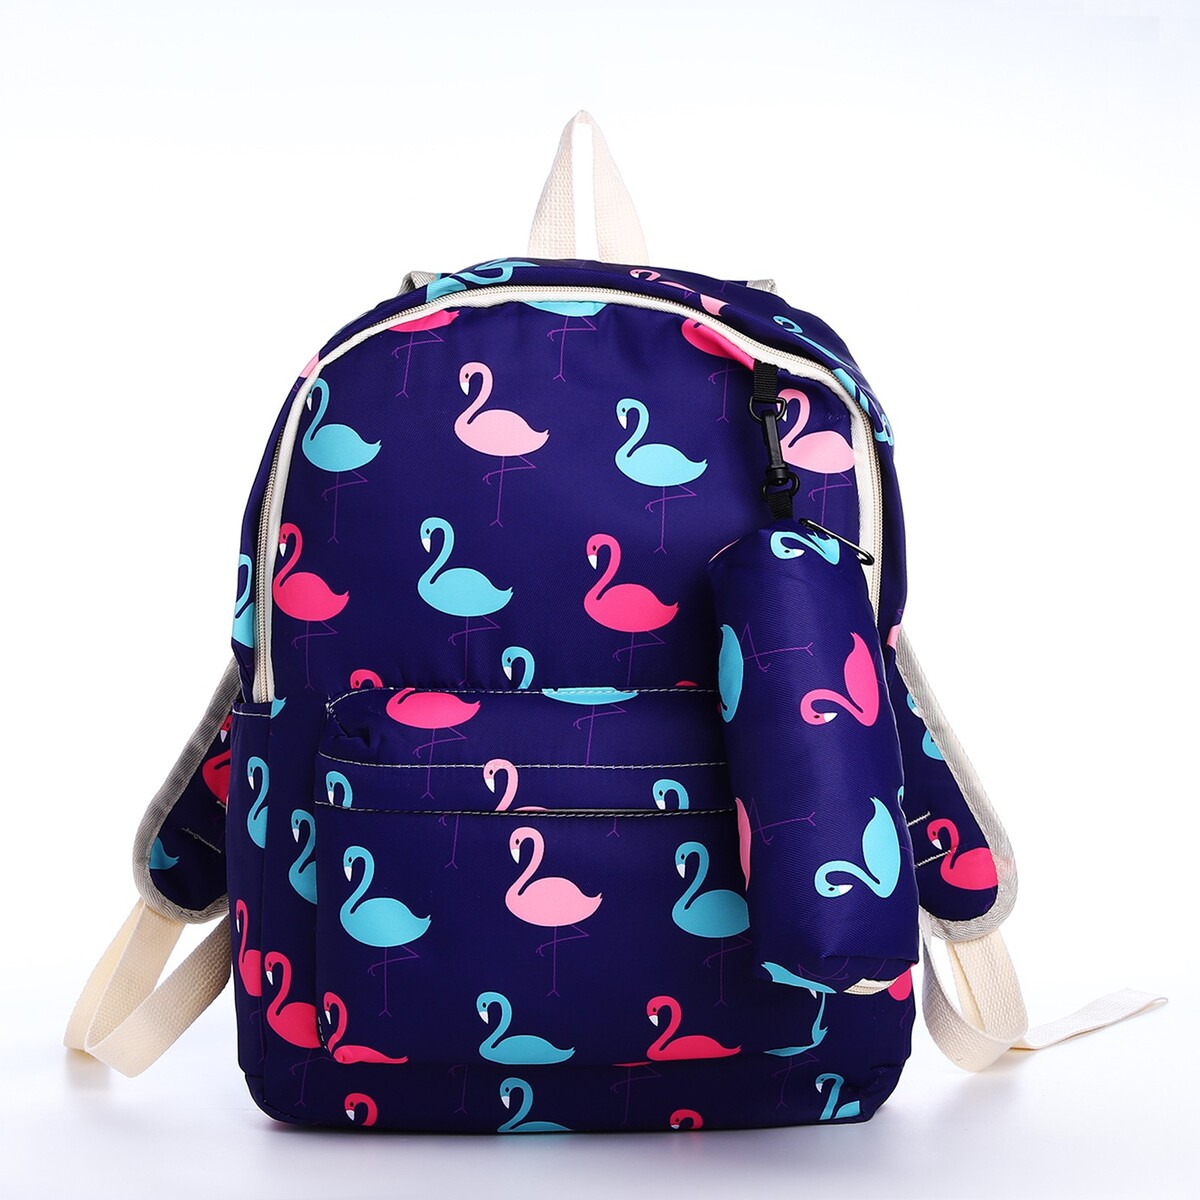 Рюкзак школьный из текстиля на молнии, 3 кармана, пенал, цвет фиолетовый рюкзак rafl панды фиолетовый